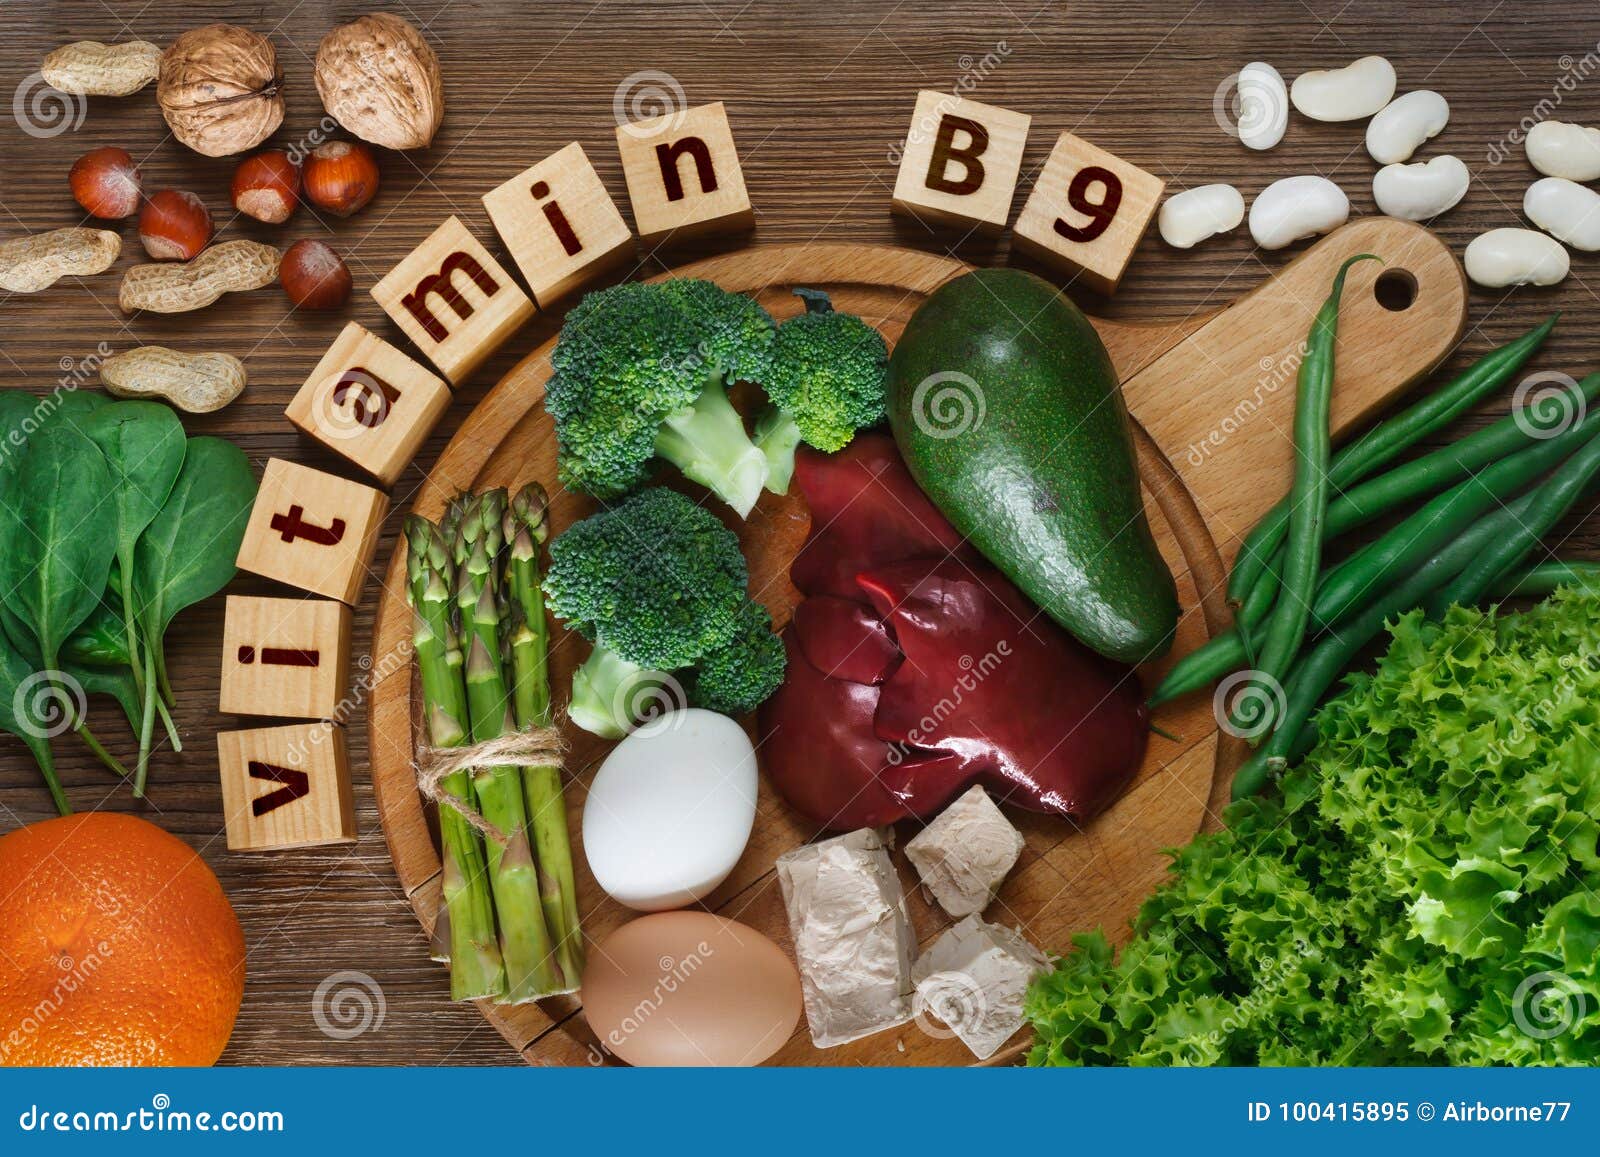 Nourritures riches en vitamine B9. Nourritures riches en acide folique de la vitamine B9 comme foie, asperge, brocoli, oeufs, salade, avocat, levure, écrous, épinards, orange et haricots Vue supérieure